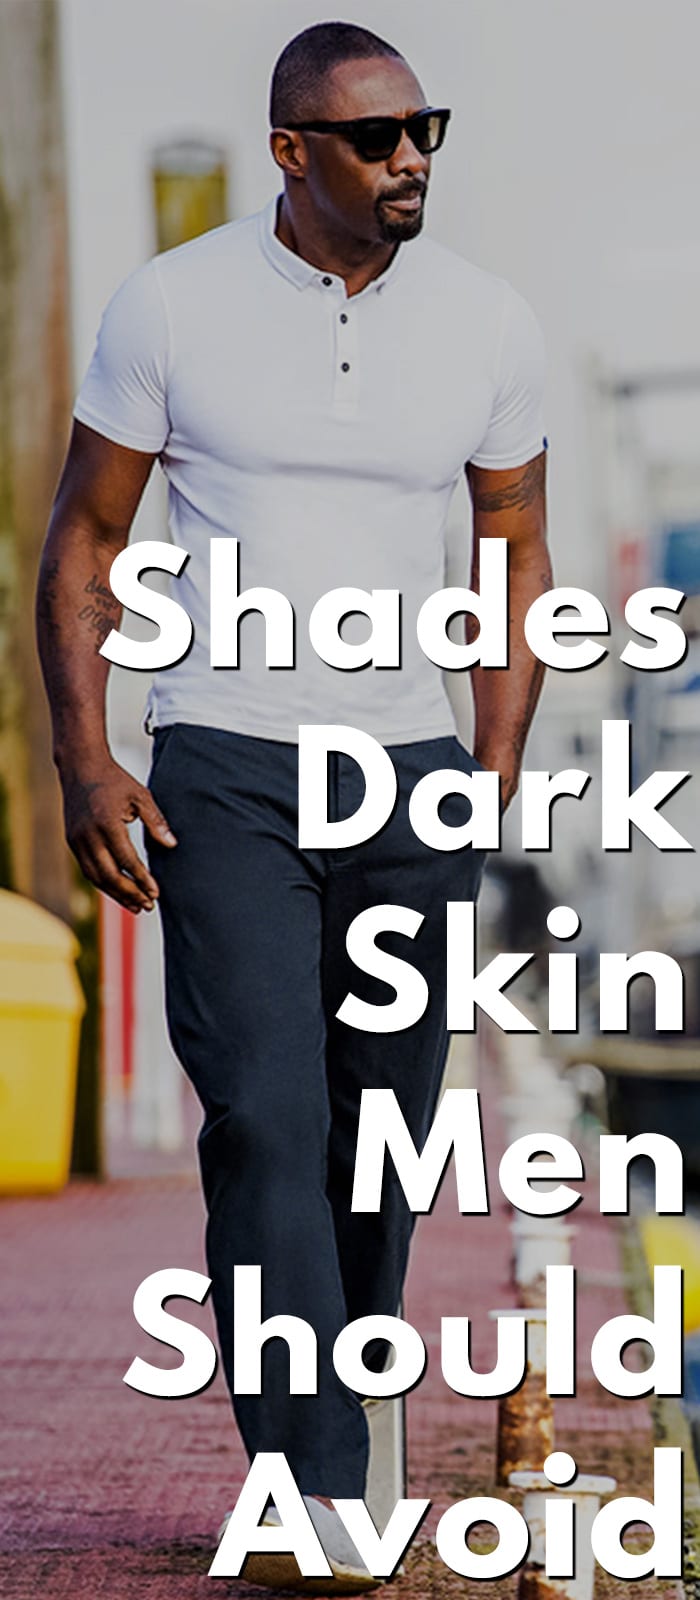 Shades Dark Skin Men Should Avoid